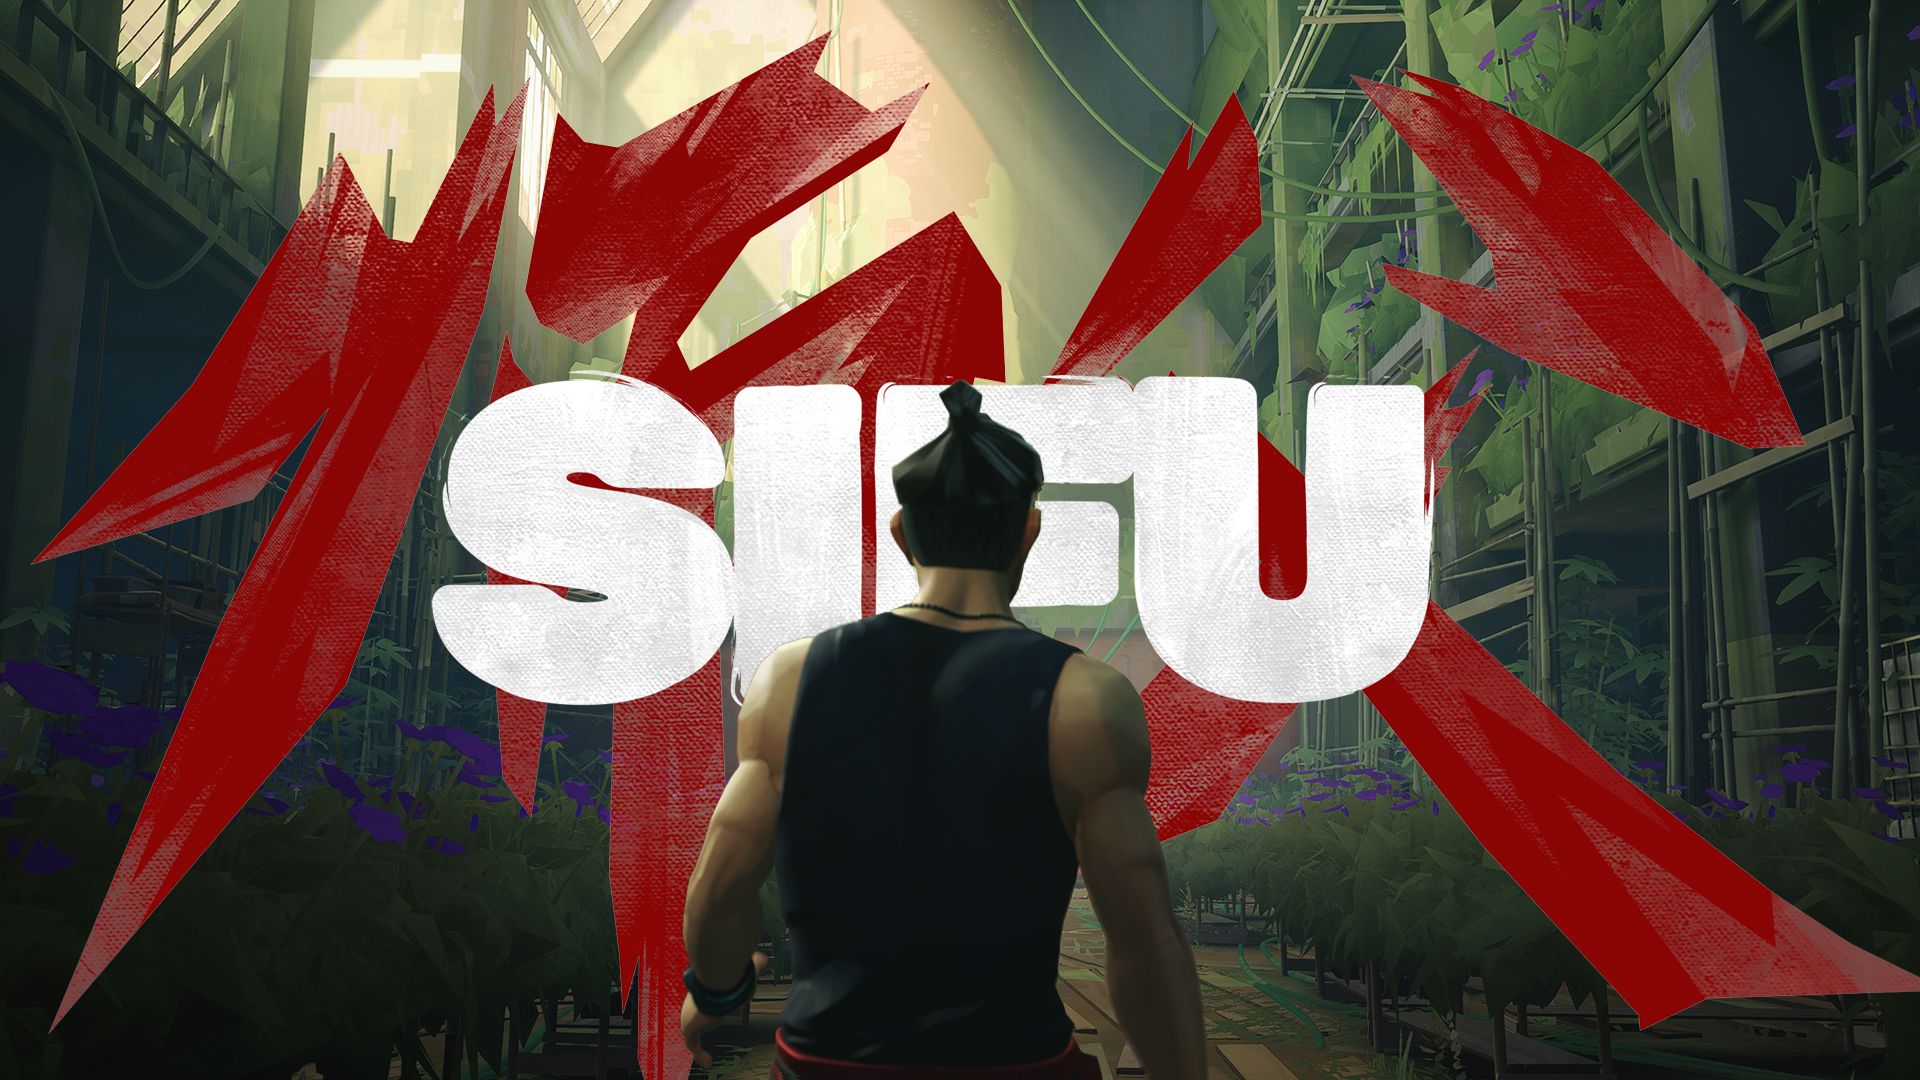 sifu, video game